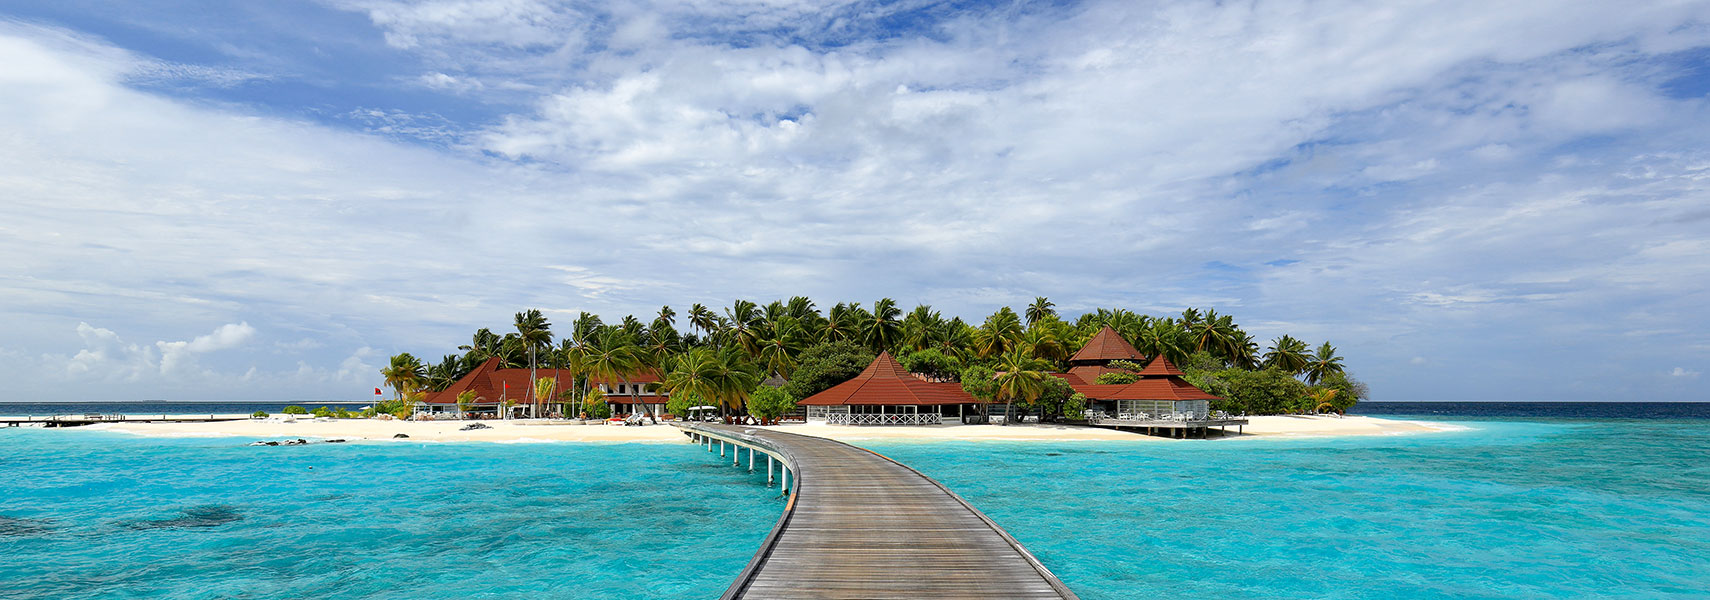 Thudufushi Beach and Water Villas, Ari Atoll, Maldives